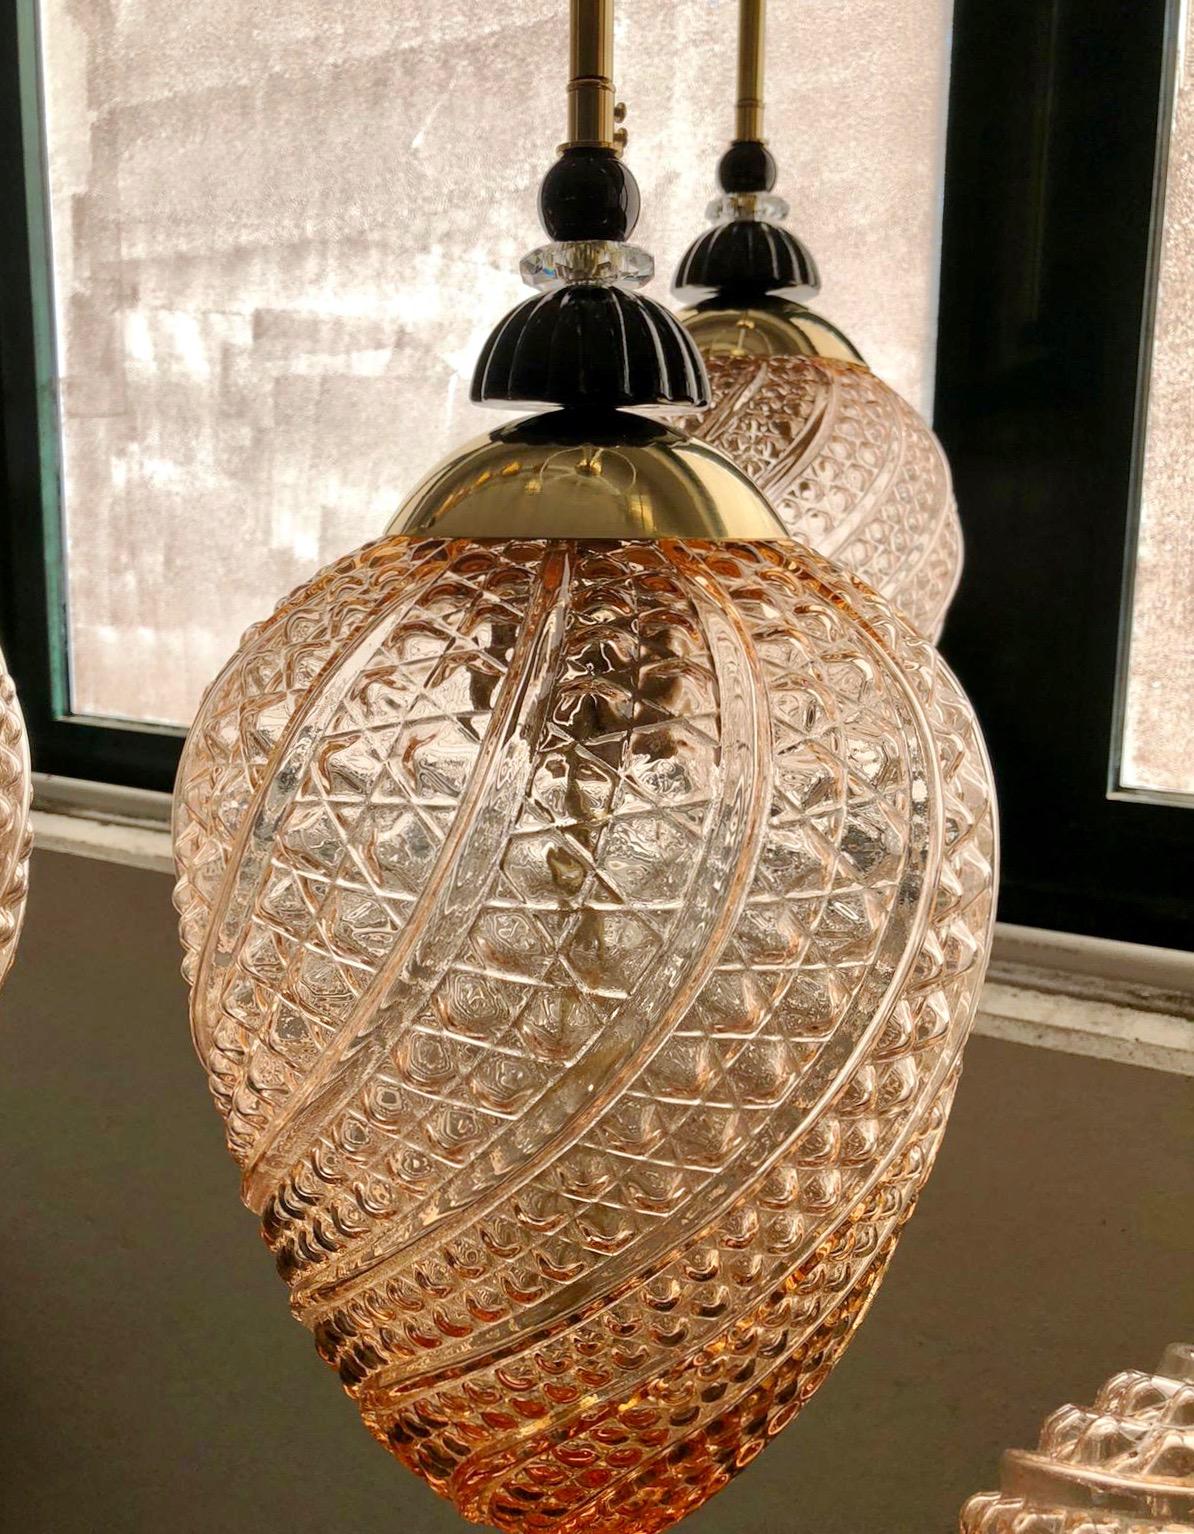 Luminaire à lanterne de style orientaliste contemporain, d'une série géométrique vénitienne moderne avec 4 formes selon les images, entièrement fabriqué sur mesure en Italie, ici avec des ferrures en laiton, le globe organique en forme d'œuf dans un